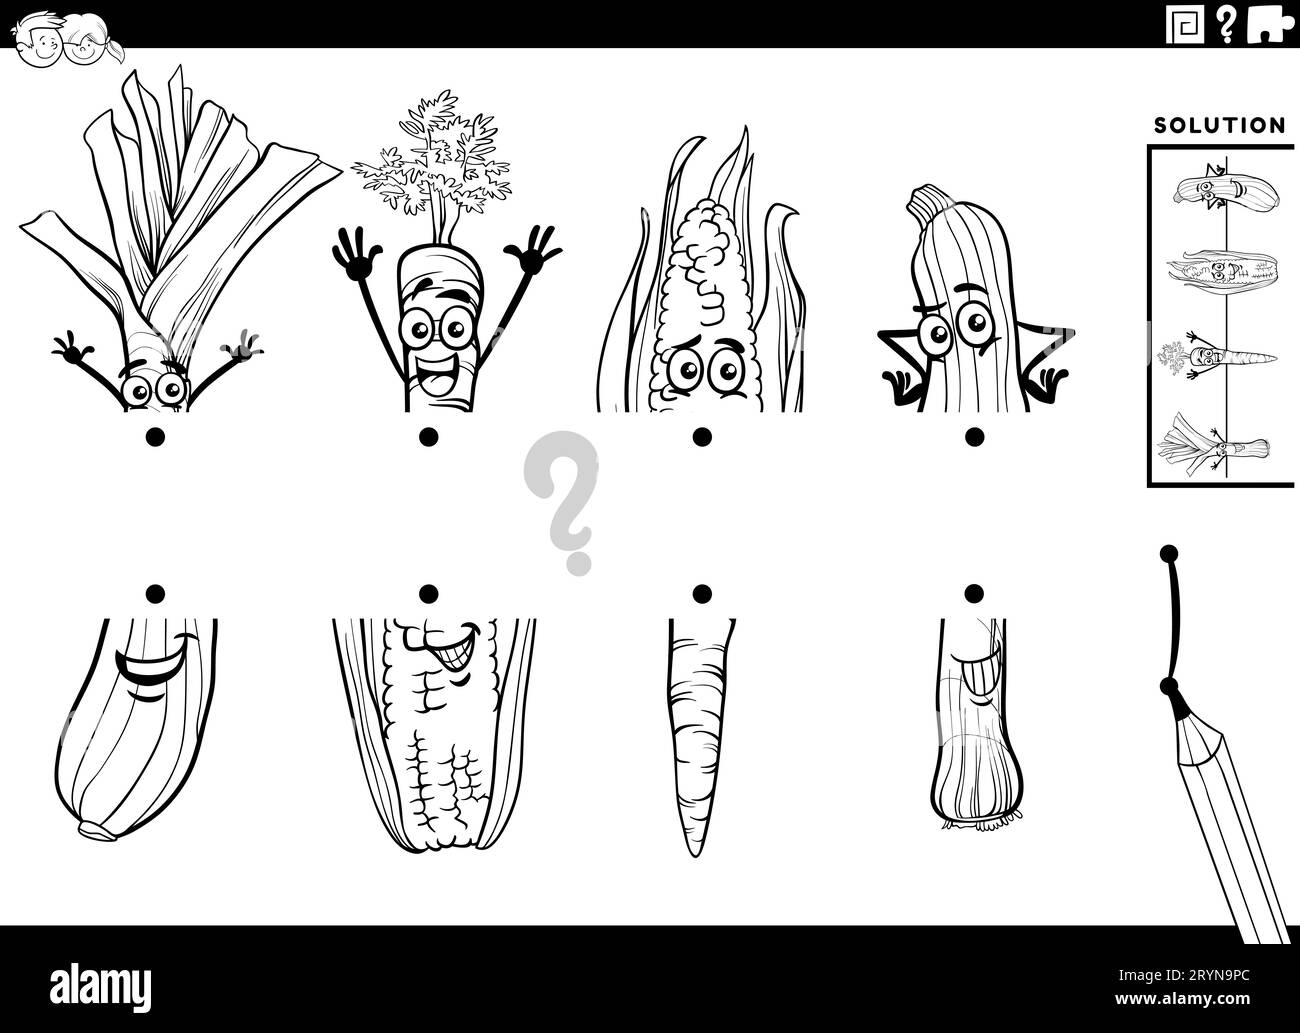 Schwarz-weißer Cartoon zur Darstellung der pädagogischen Aktivität, die Bildhälften mit Gemüsefiguren in Einklang bringt Stockfoto